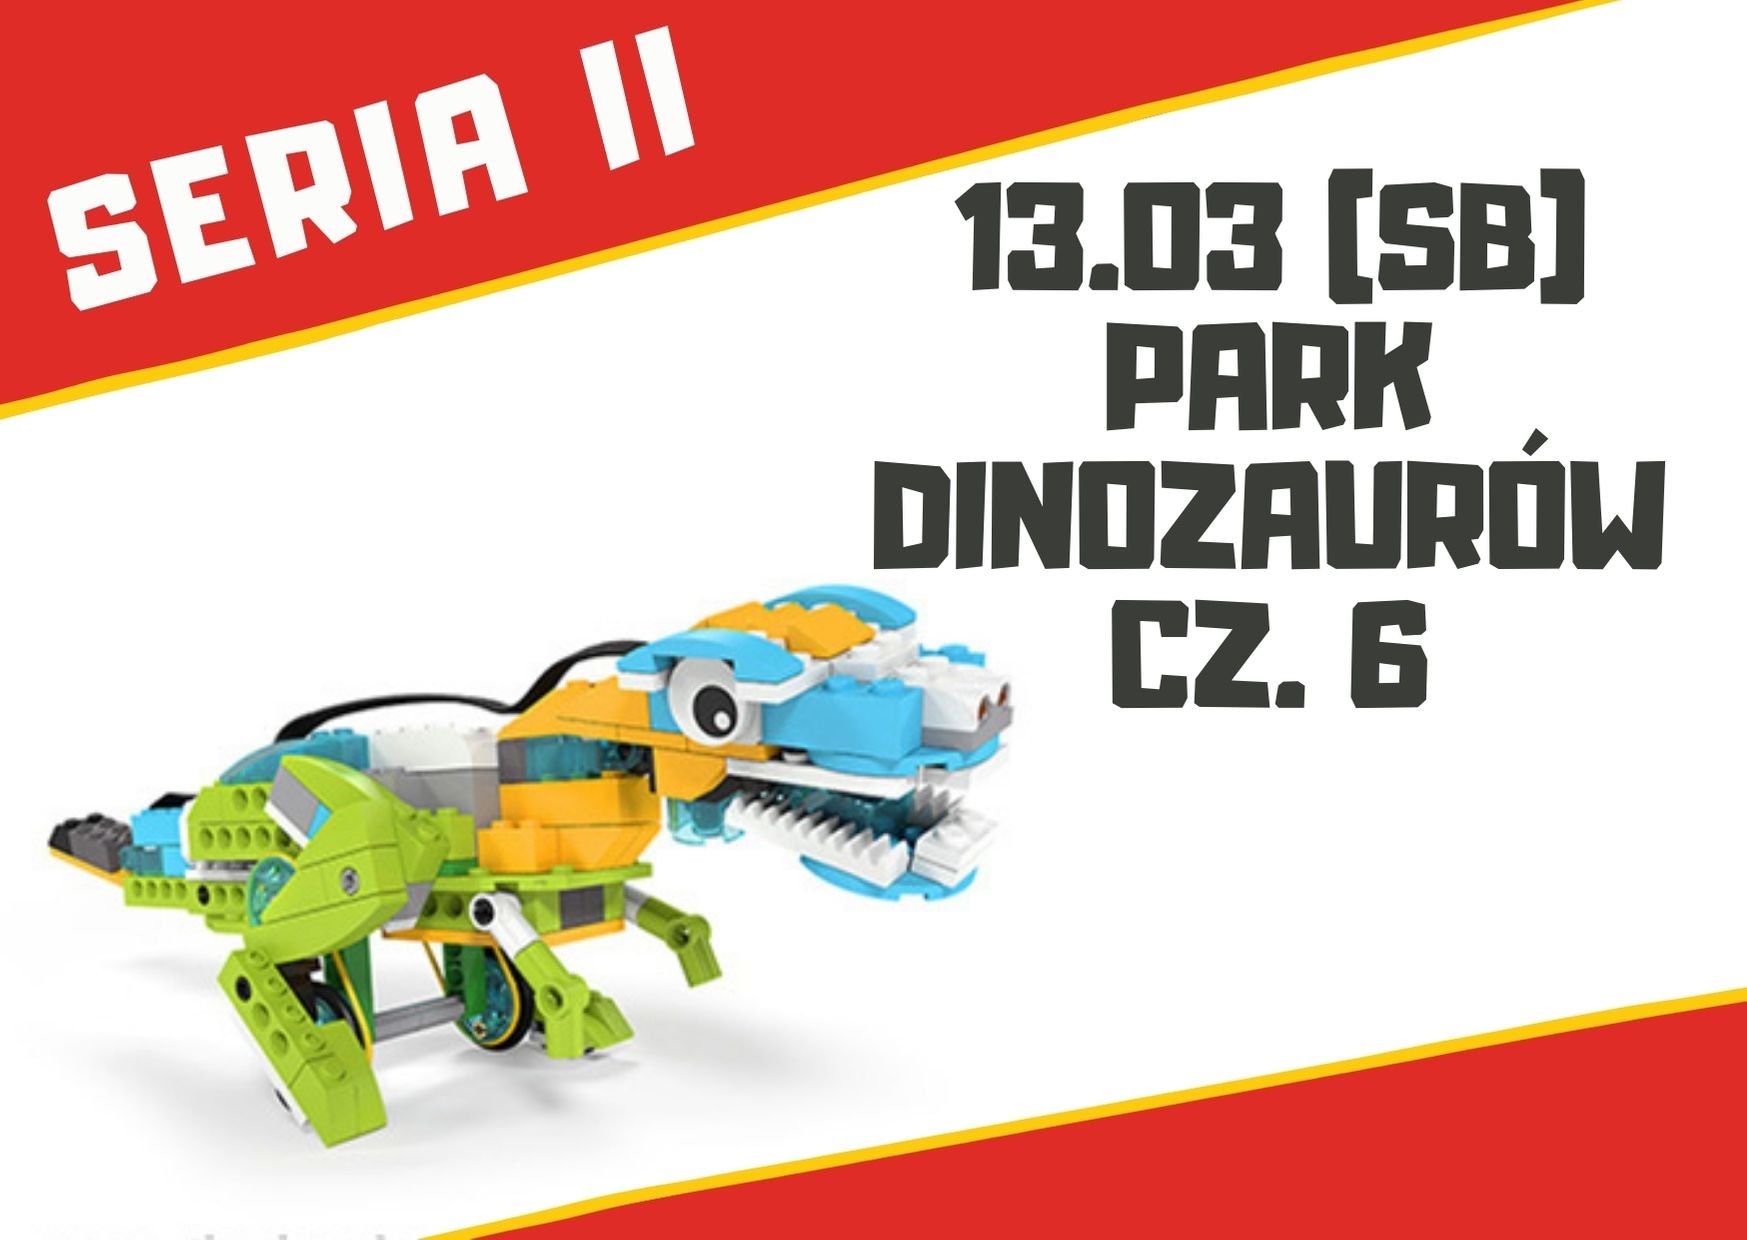 Park Dinozaurów cz. 6 – warsztaty robotyki dla dzieci 7+ lat